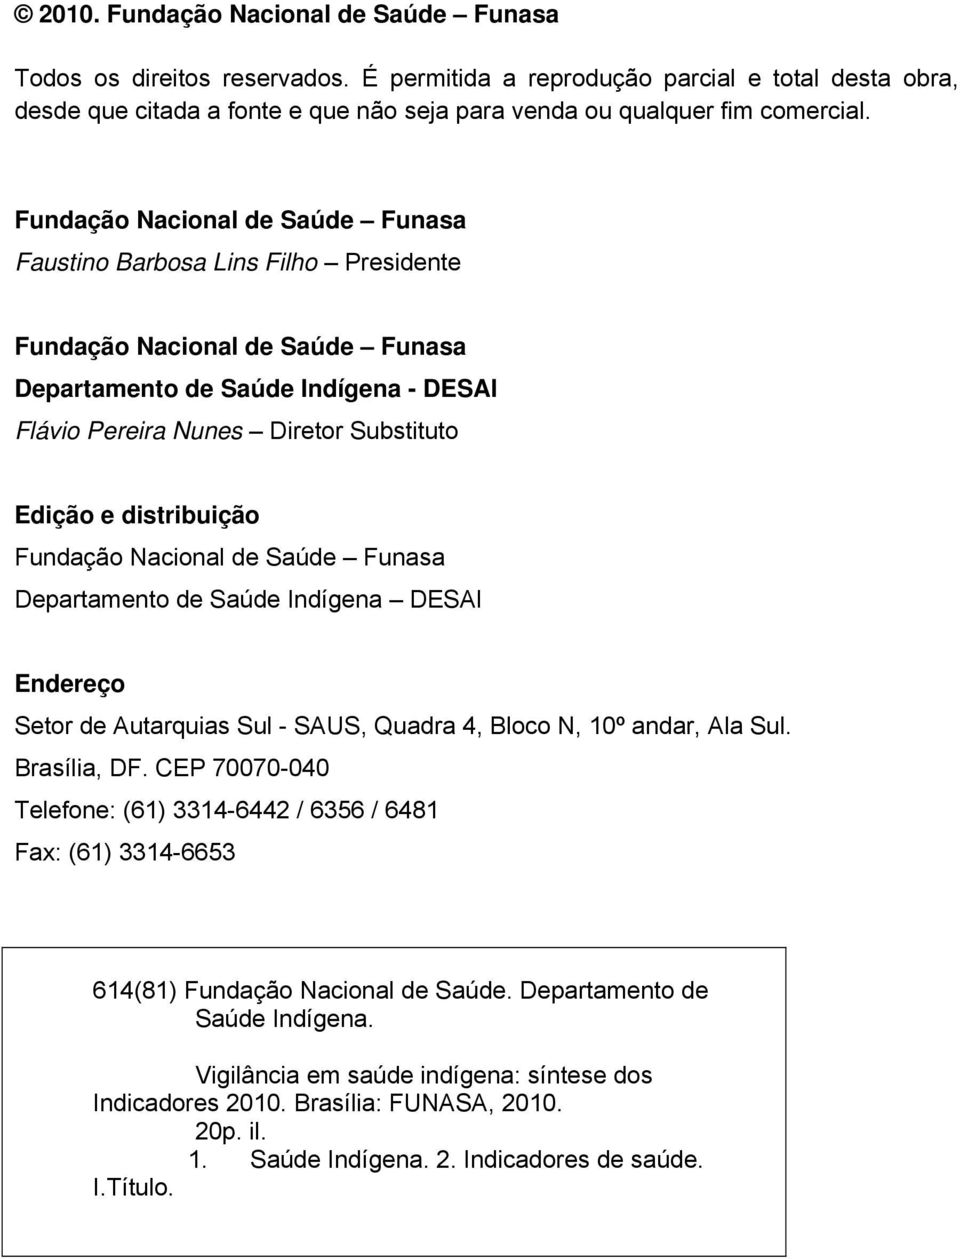 distribuição Fundação Nacional de Saúde Funasa Departamento de Saúde Indígena DESAI Endereço Setor de Autarquias Sul - SAUS, Quadra 4, Bloco N, 10º andar, Ala Sul. Brasília, DF.